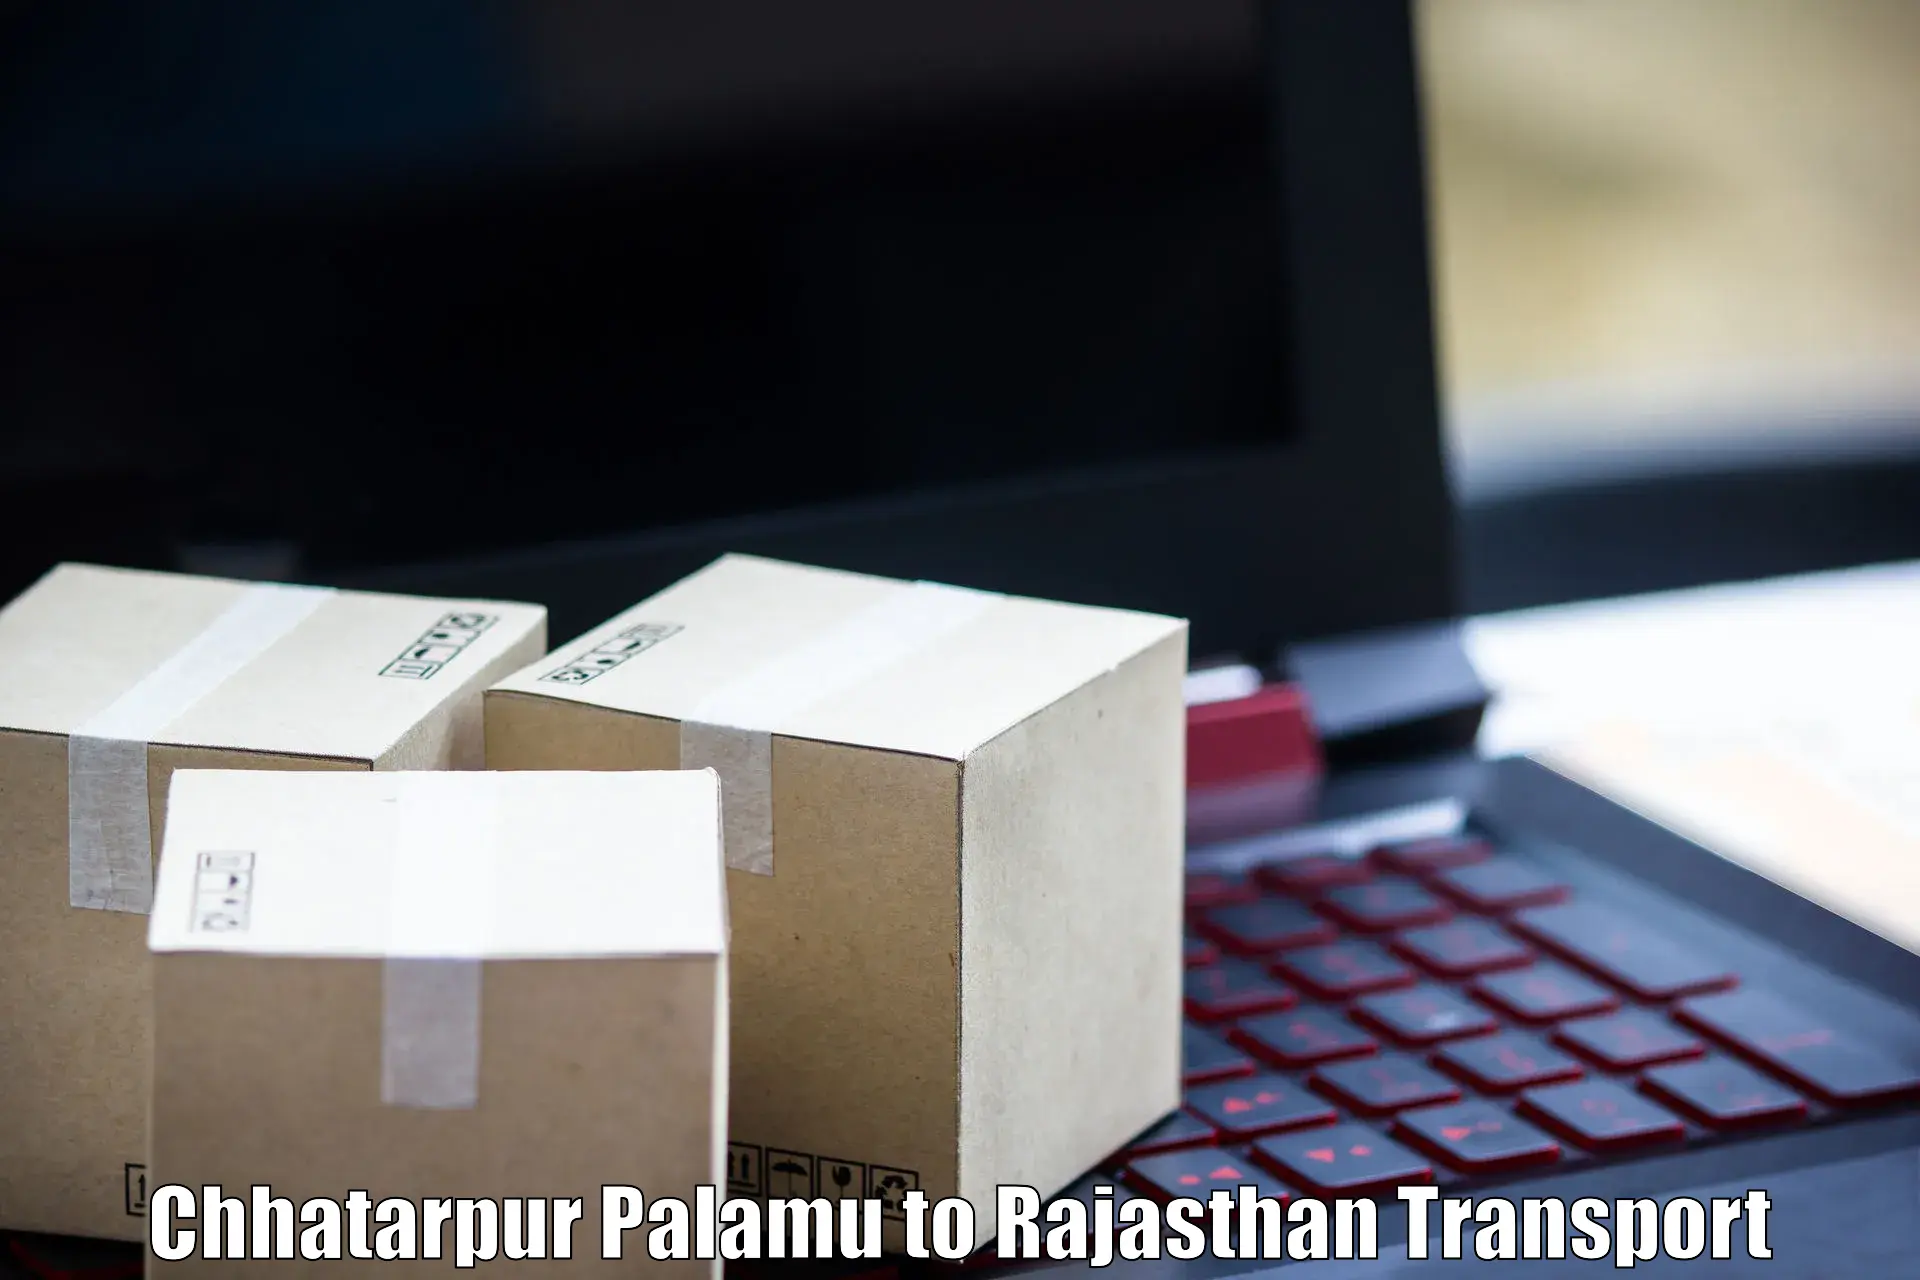 Delivery service Chhatarpur Palamu to Banswara